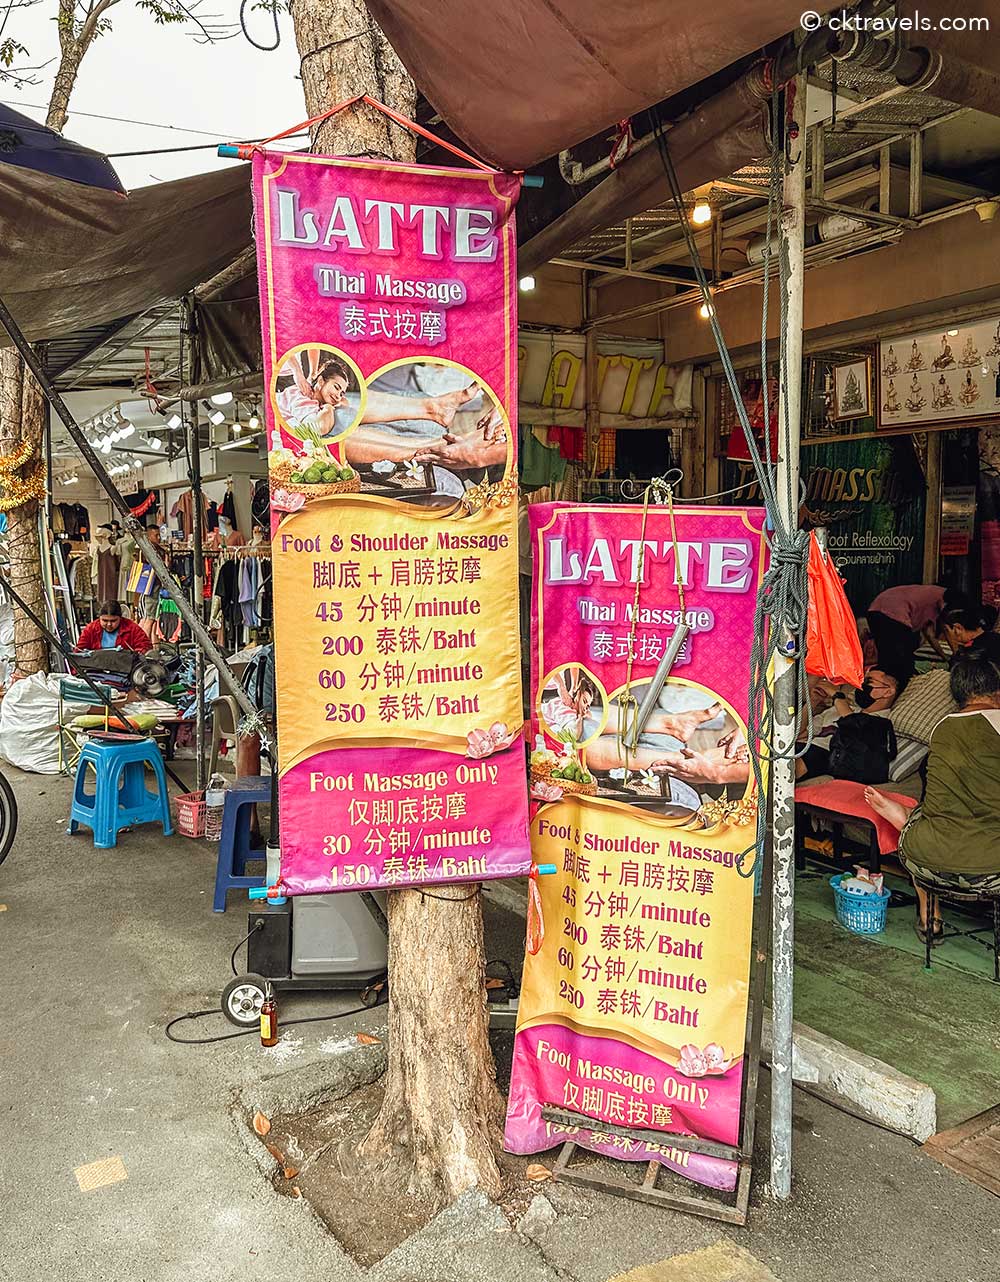 Chatuchak Weekend Market Bangkok massage prices